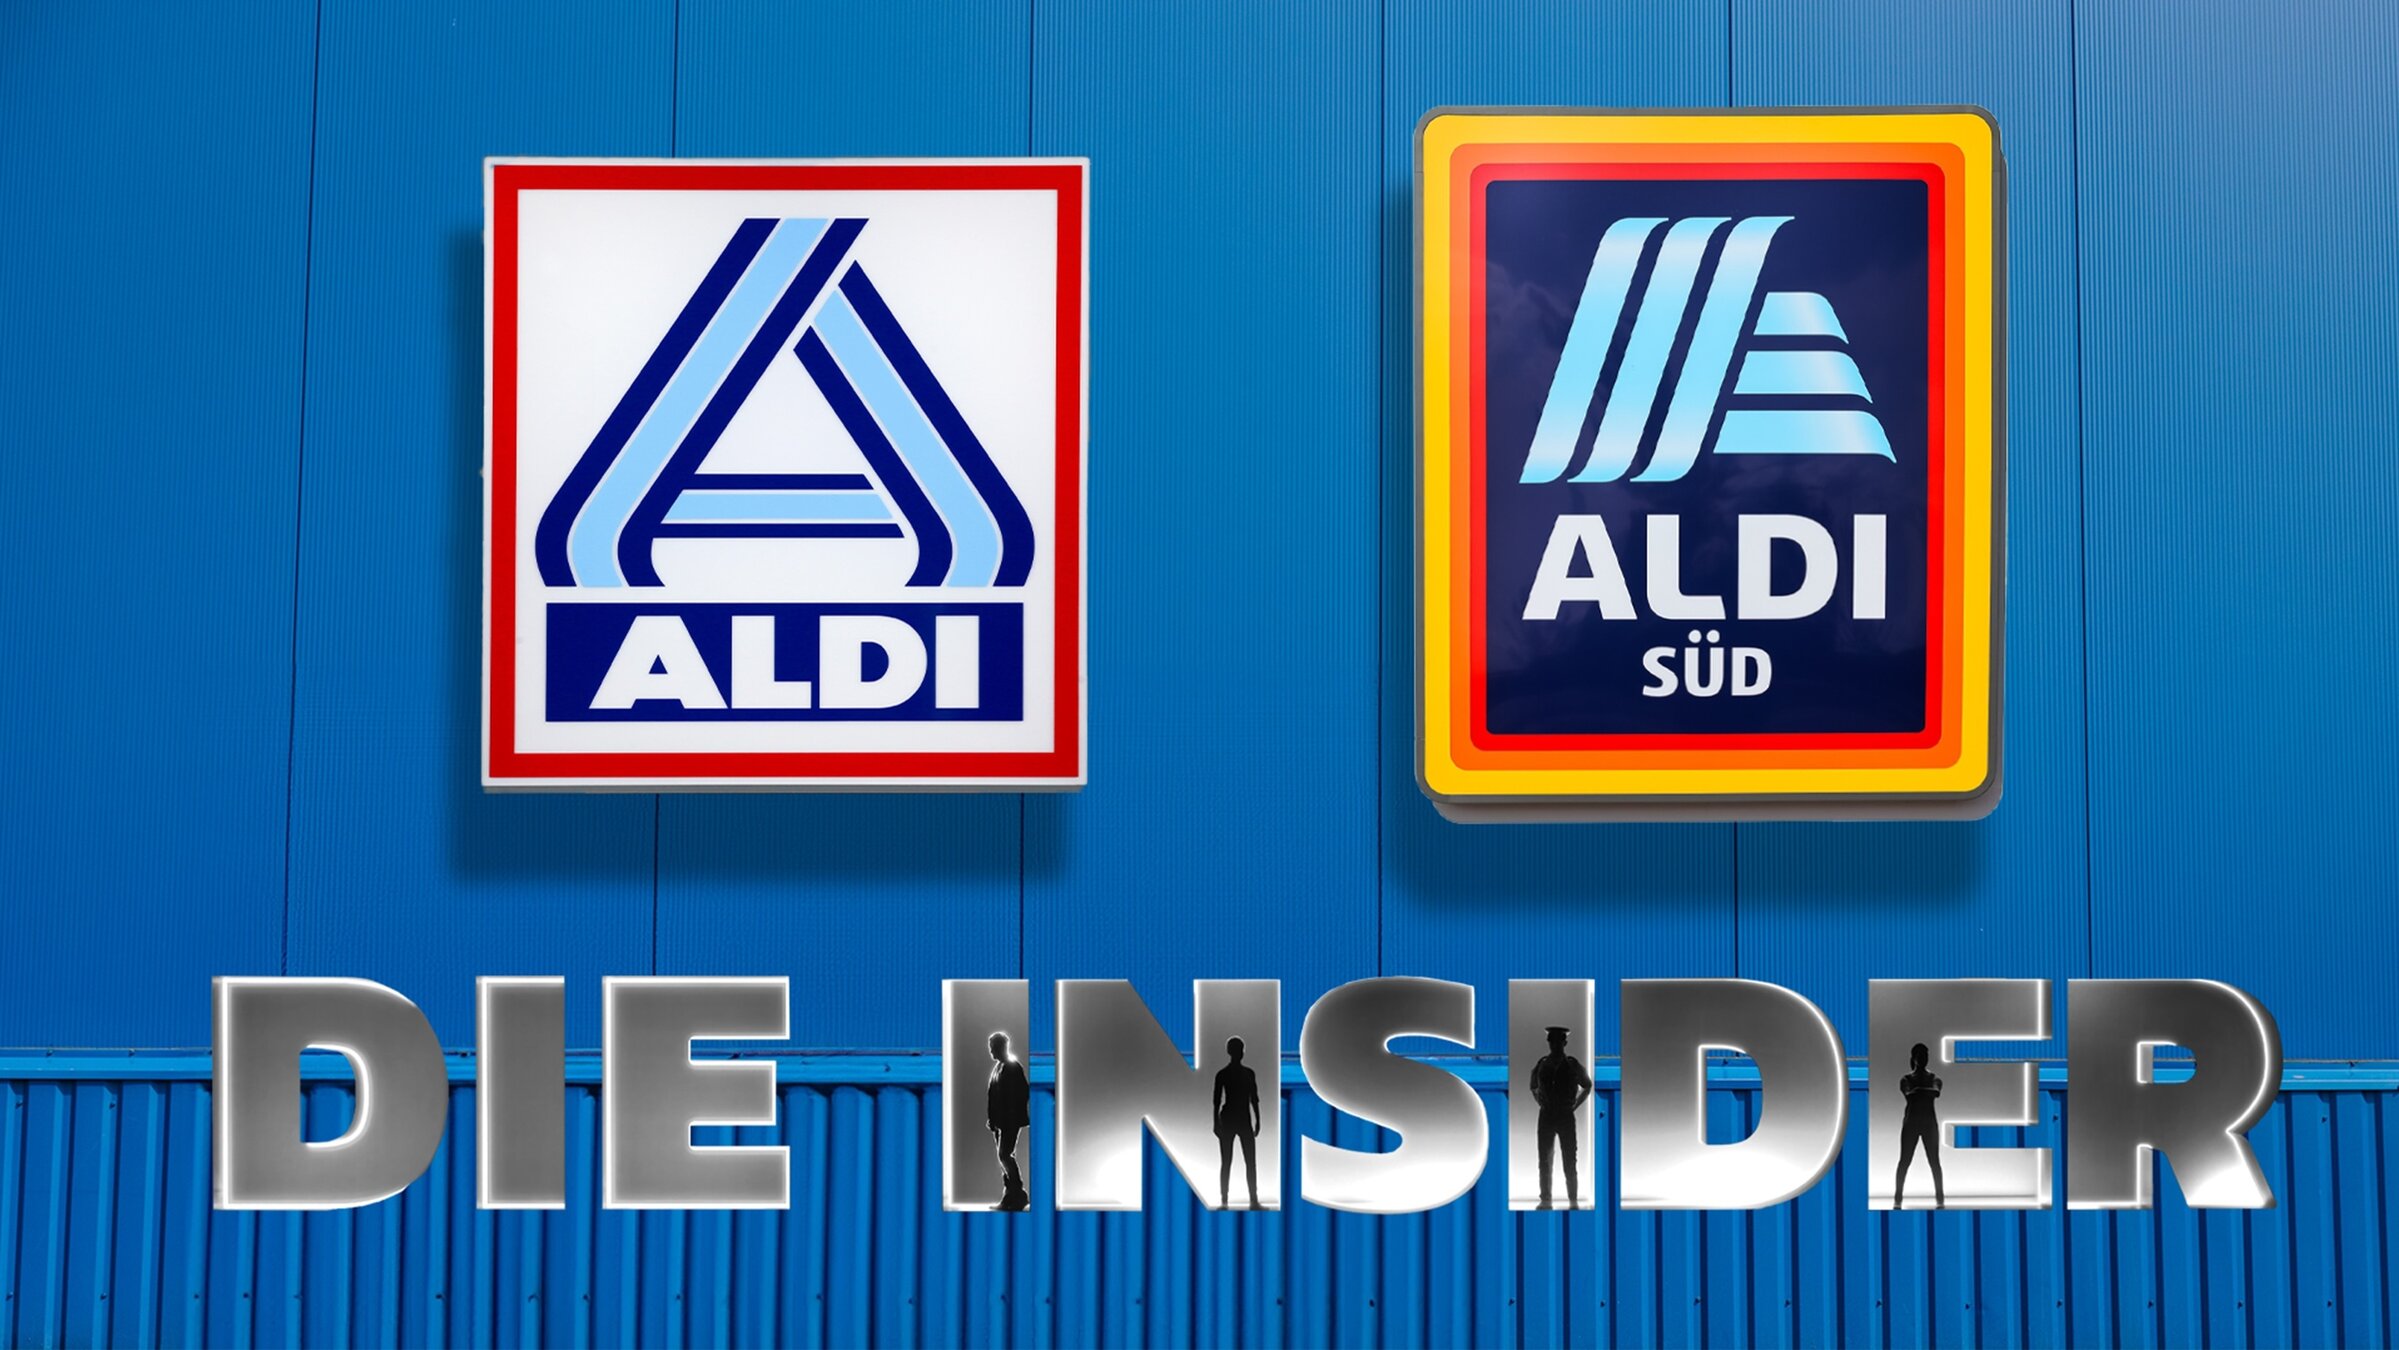 "ALDI: Die Insider - Tricks hinter den Kulissen": Fotomontage: Die Logos der Discounter ALDI Nord und ALDI SÜD liegen nebeneinander auf einer blauen Fassade. Unter den Logos ist die Titelgrafik "Die Insider" zu sehen.